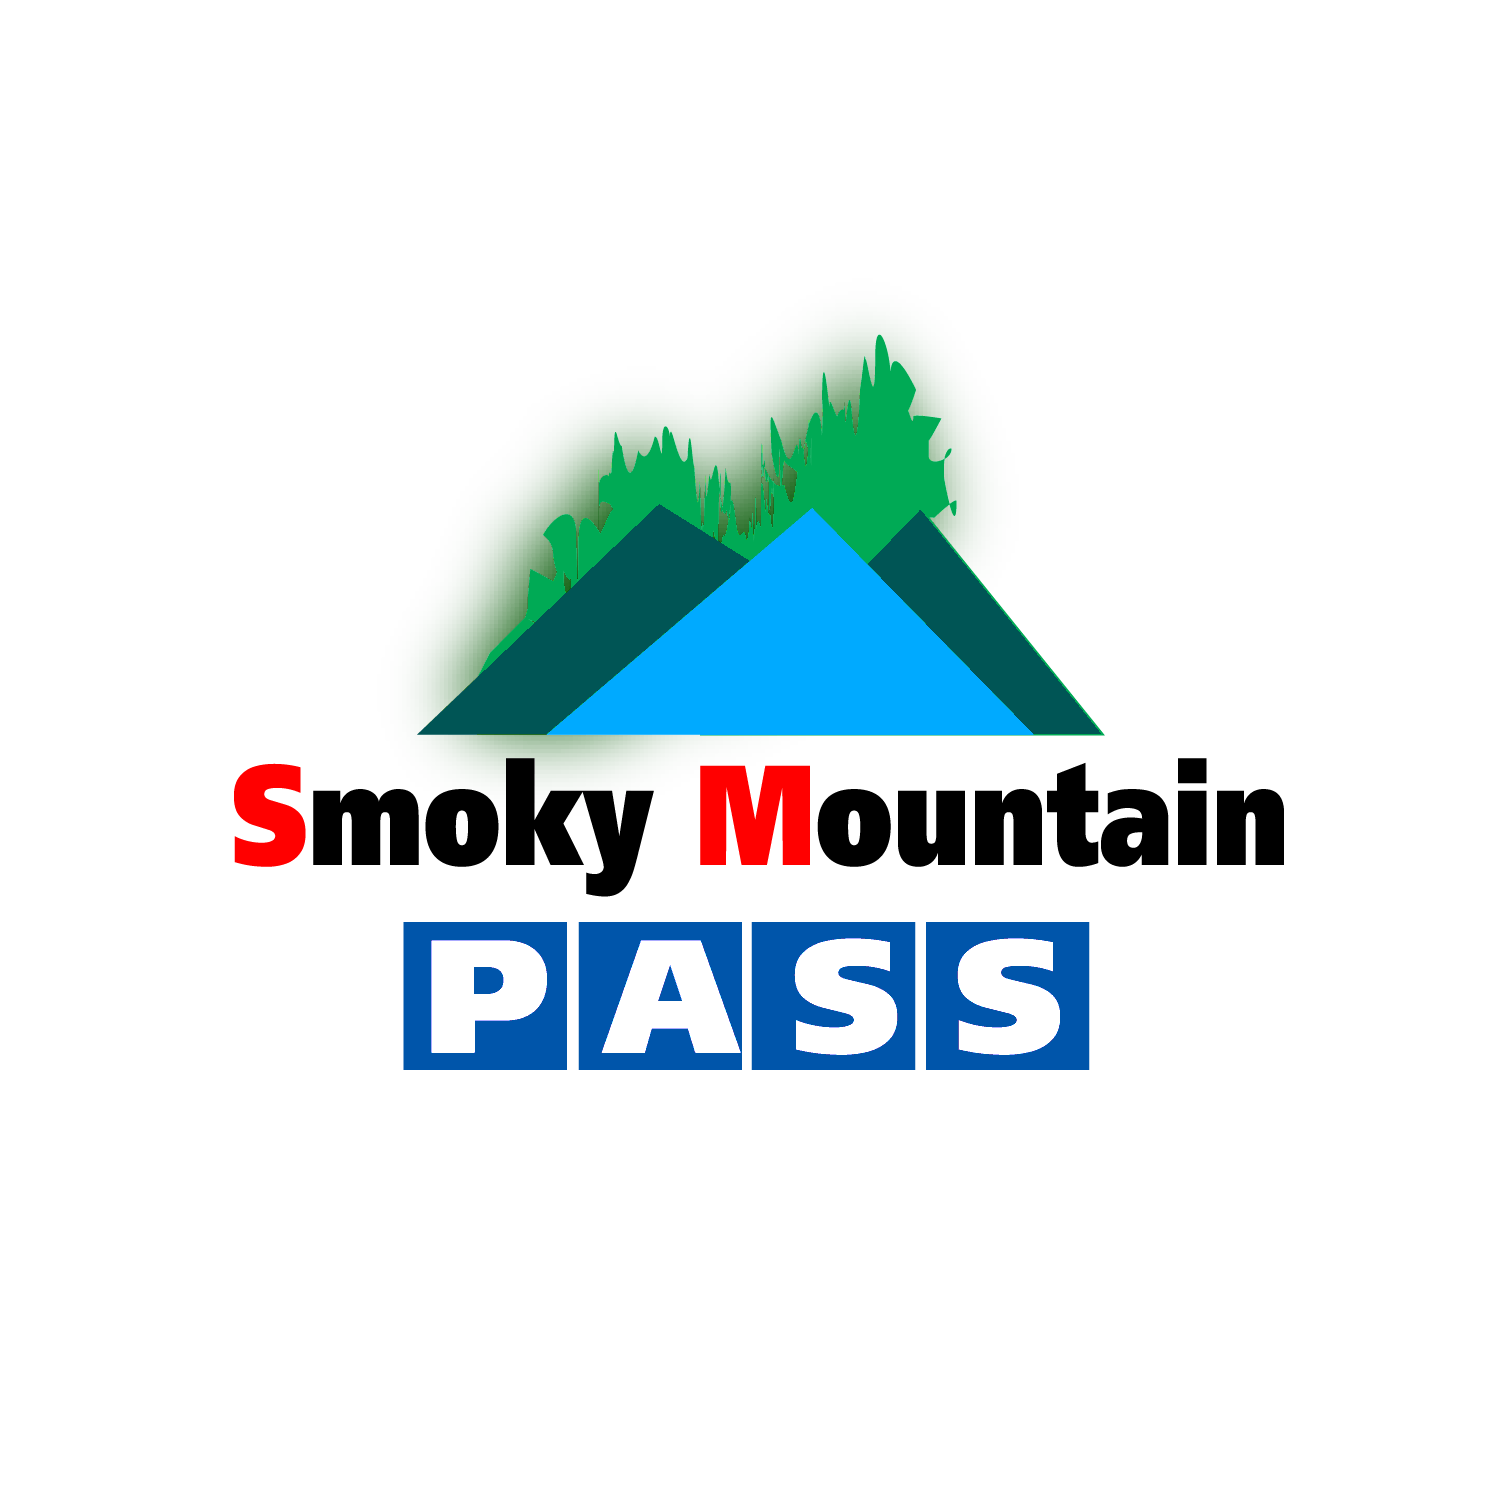 House Mountain Logo - Elegant, Playful, Entertainment Logo Design for Smoky Mountain Pass ...